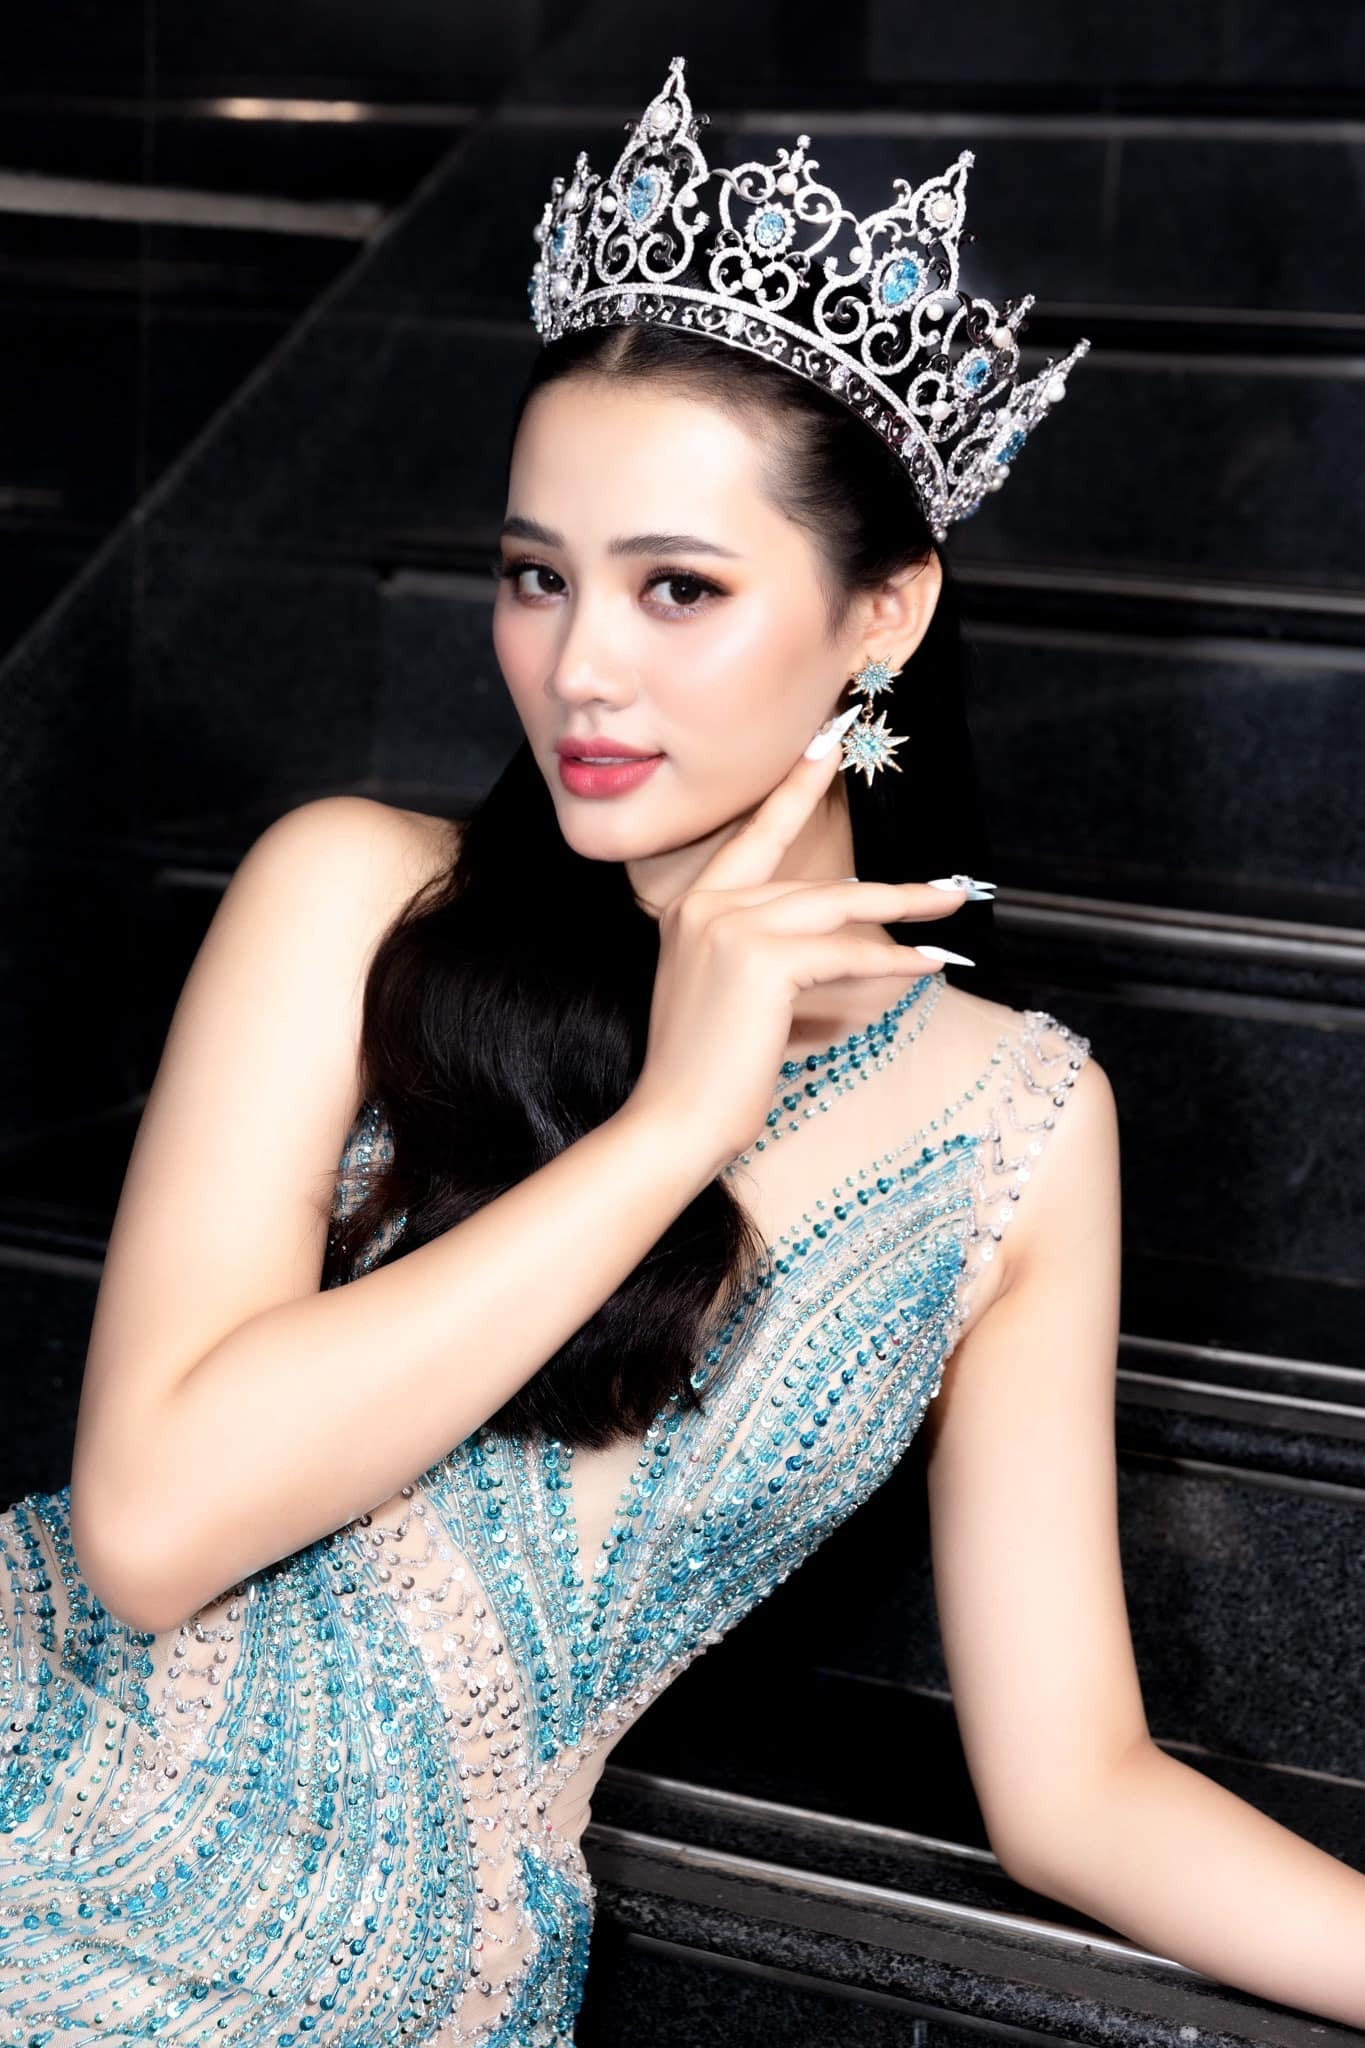 Đinh Như Phương chỉ giữ vương miện Hoa hậu trong vòng 1 tháng, sau đó giao lại cho BTC để đấu giá ủng hộ các chiến sĩ bám biển.